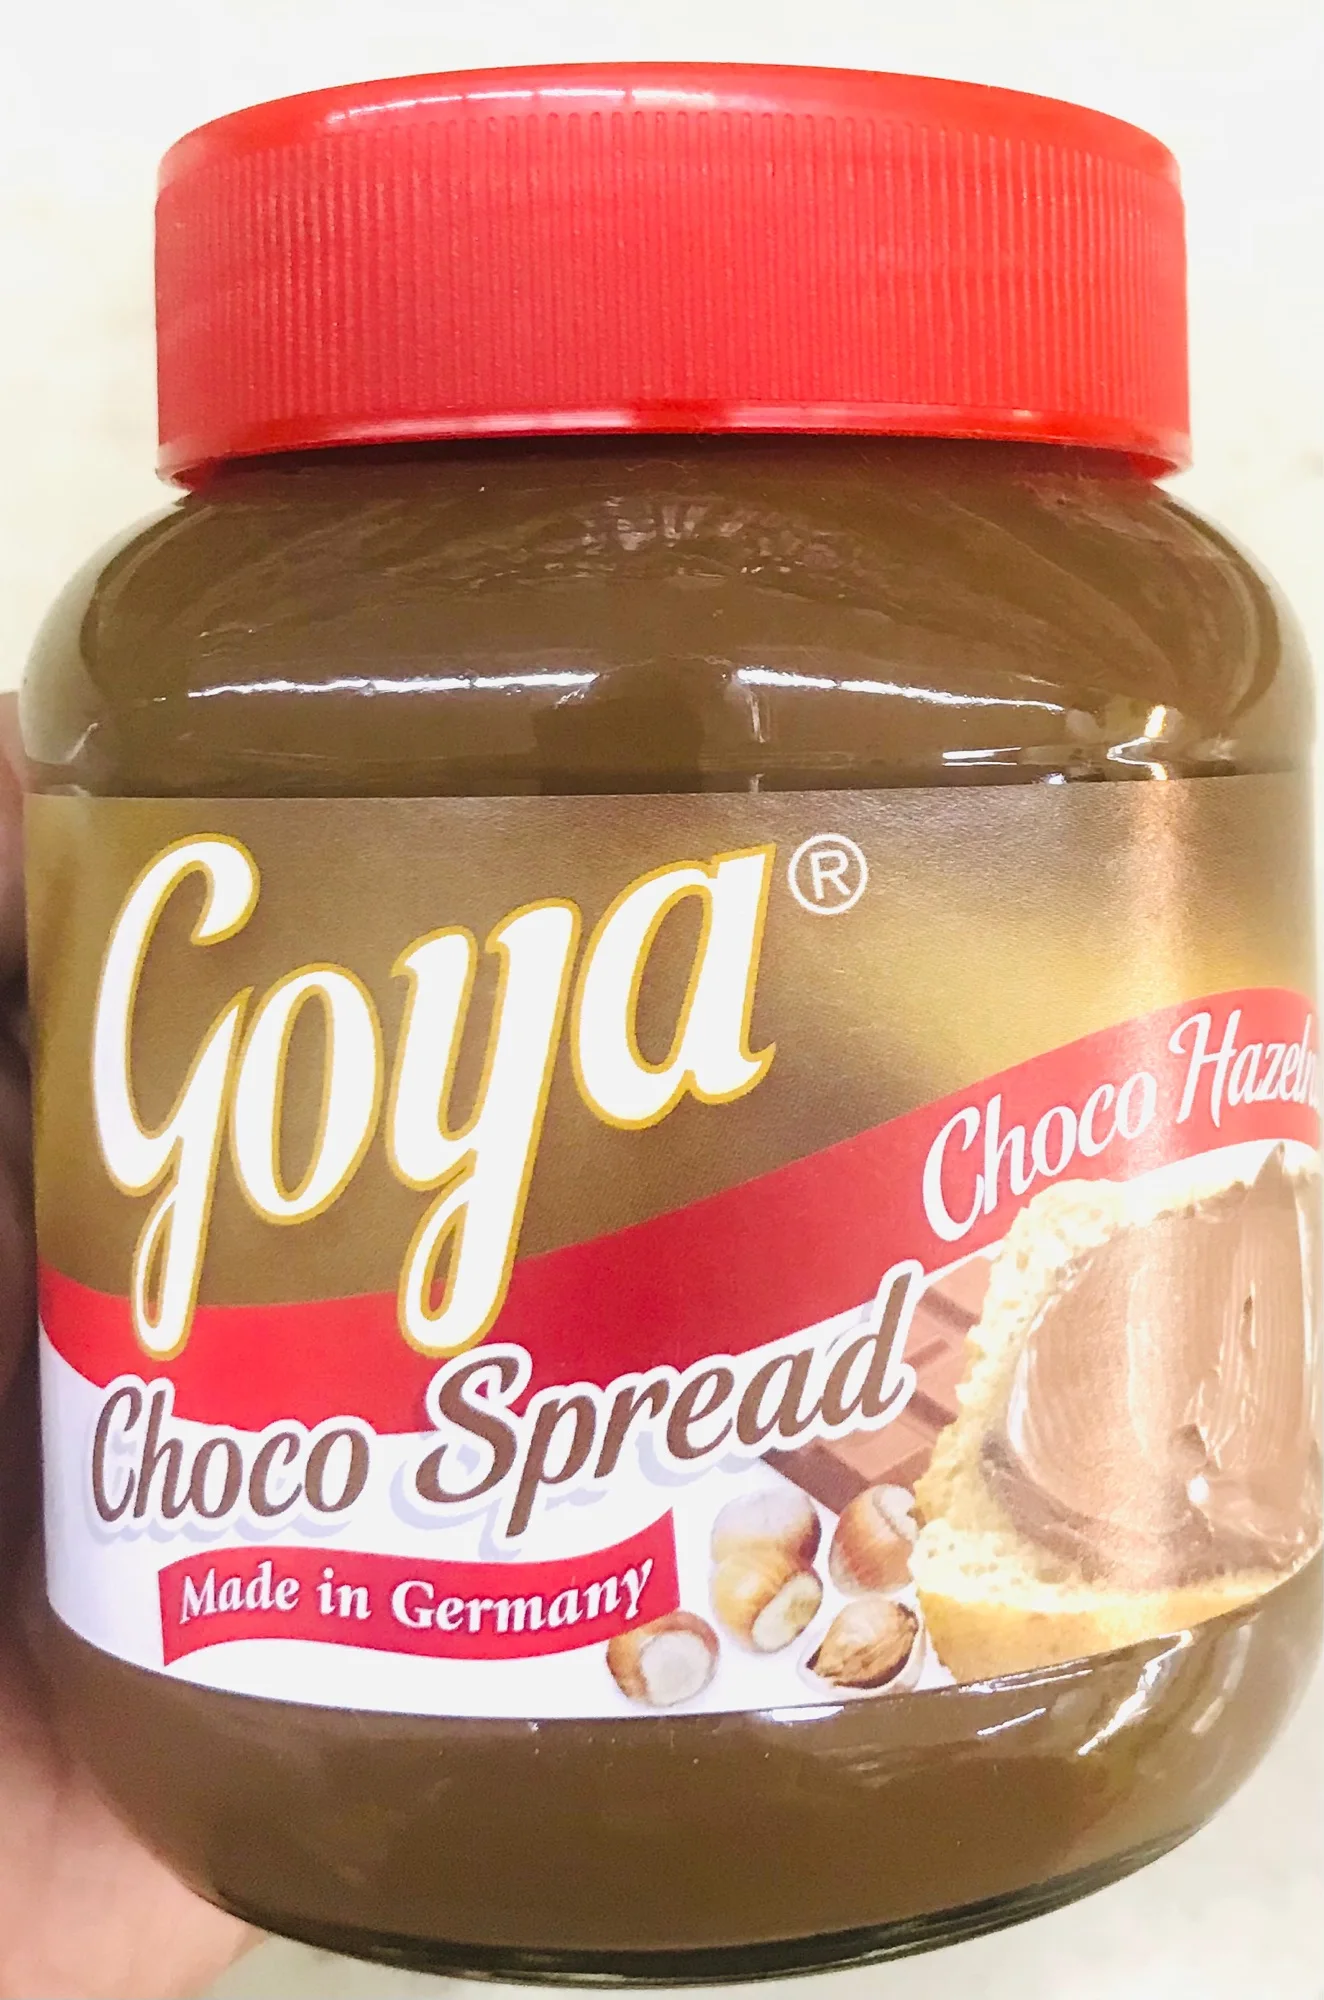 Goya Choco Hazelnut Spread 400g